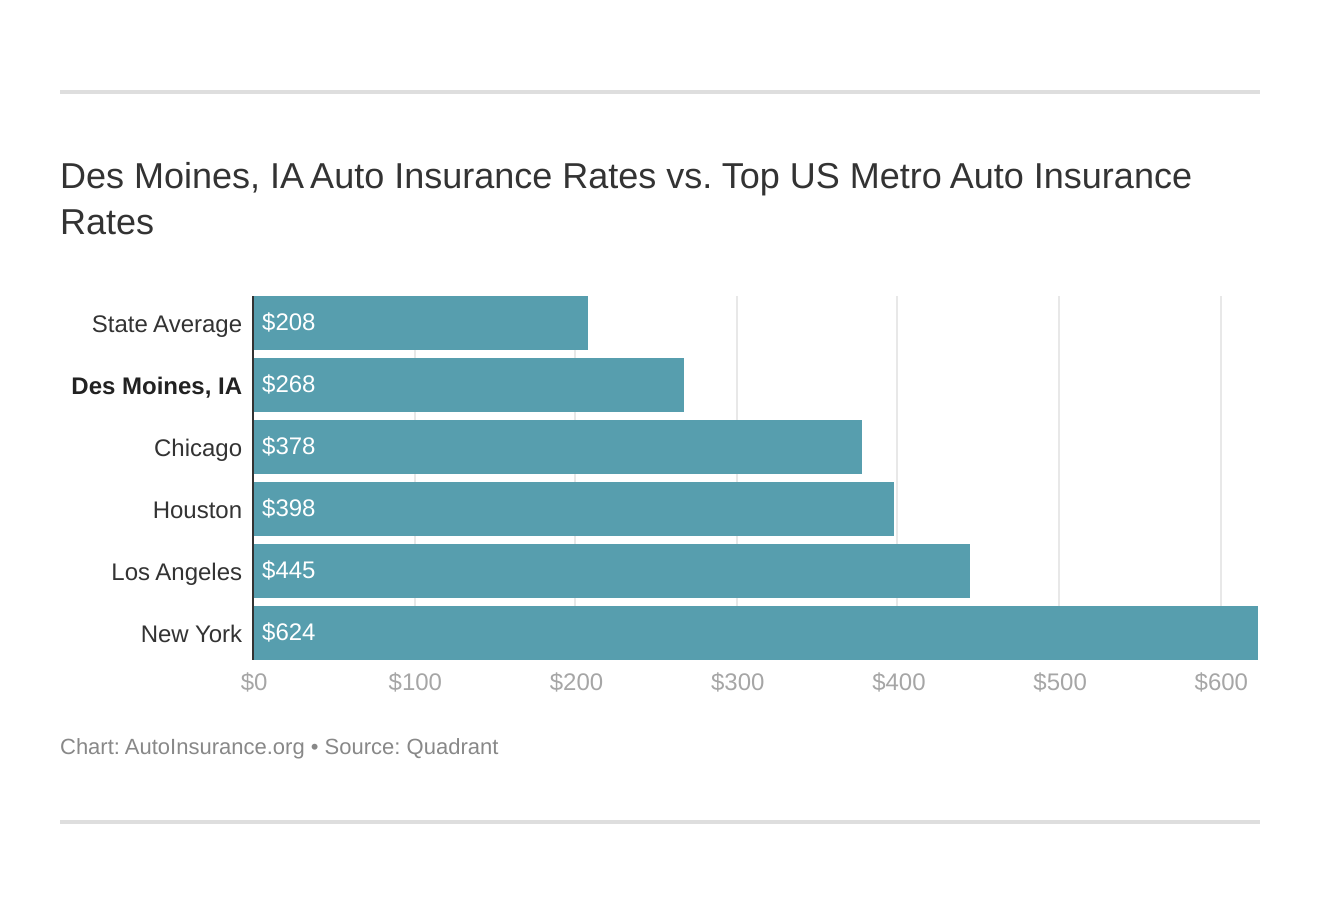 Des Moines, IA Auto Insurance Rates vs. Top US Metro Auto Insurance Rates